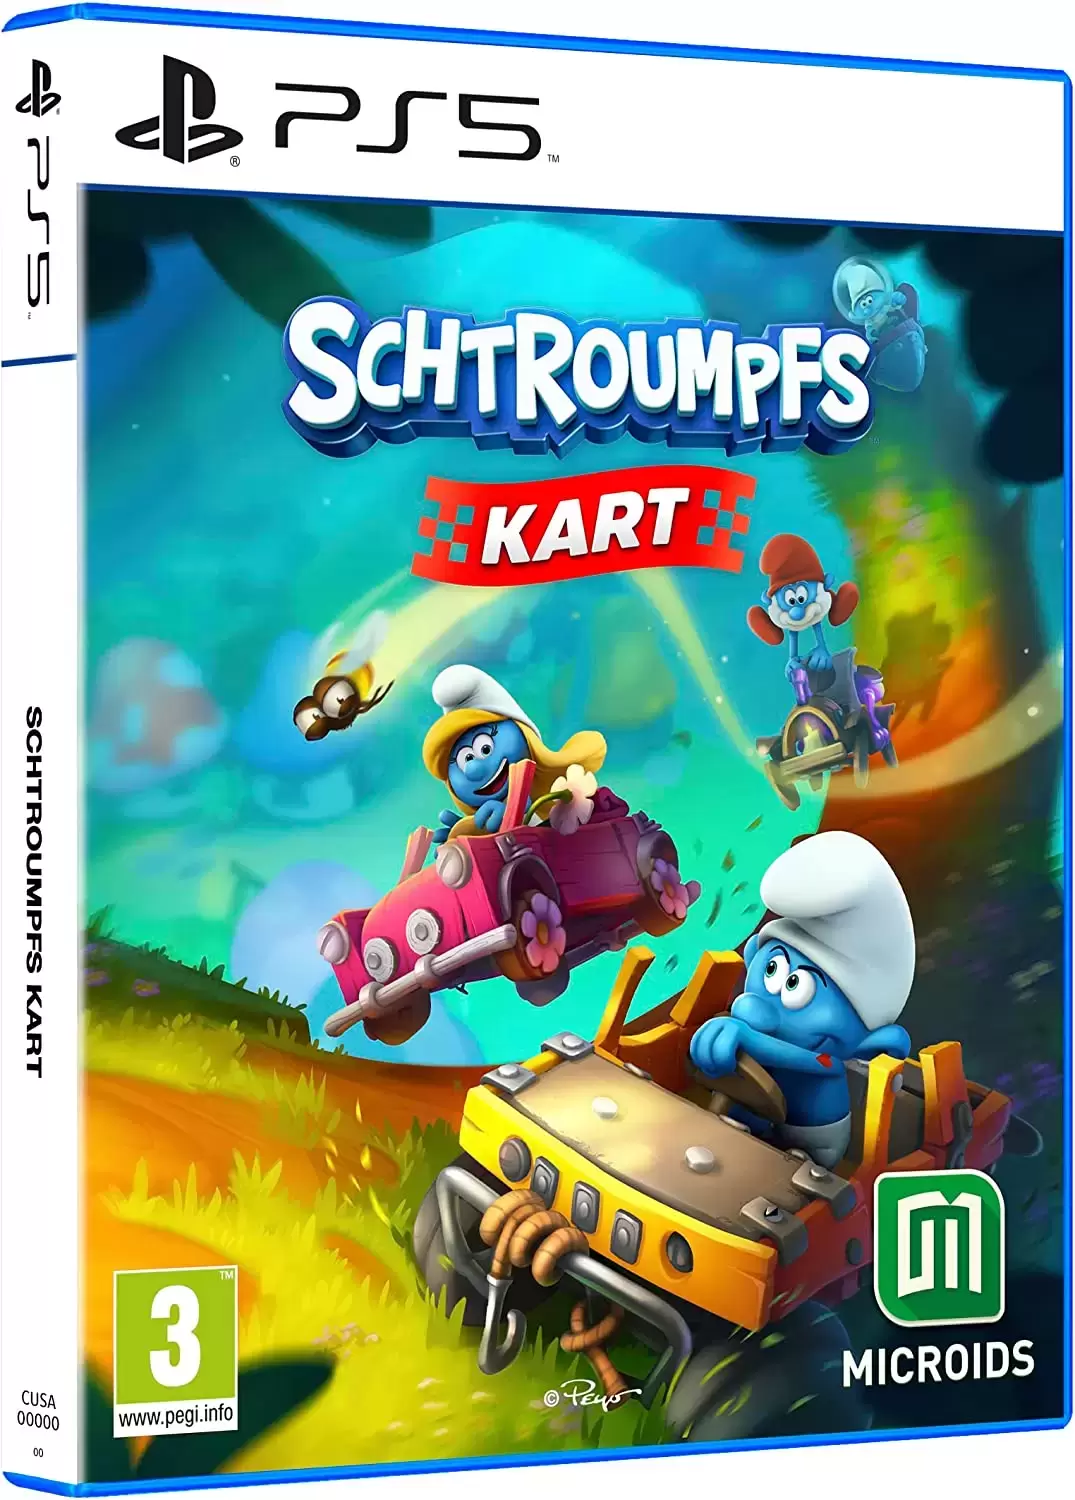 PS5 Games - Schtroumpfs Kart